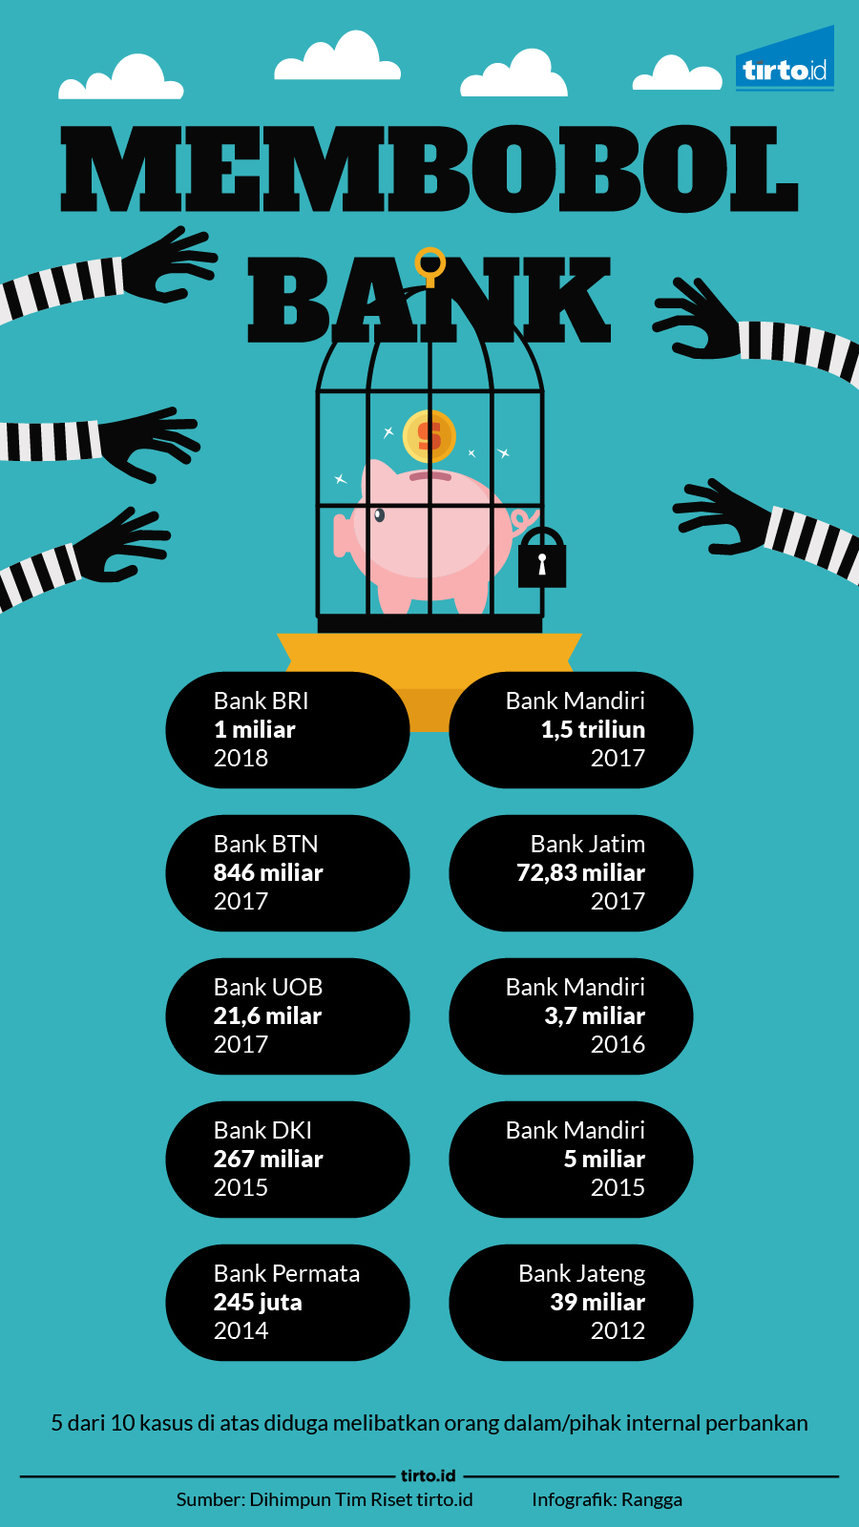 infografik membobol bank